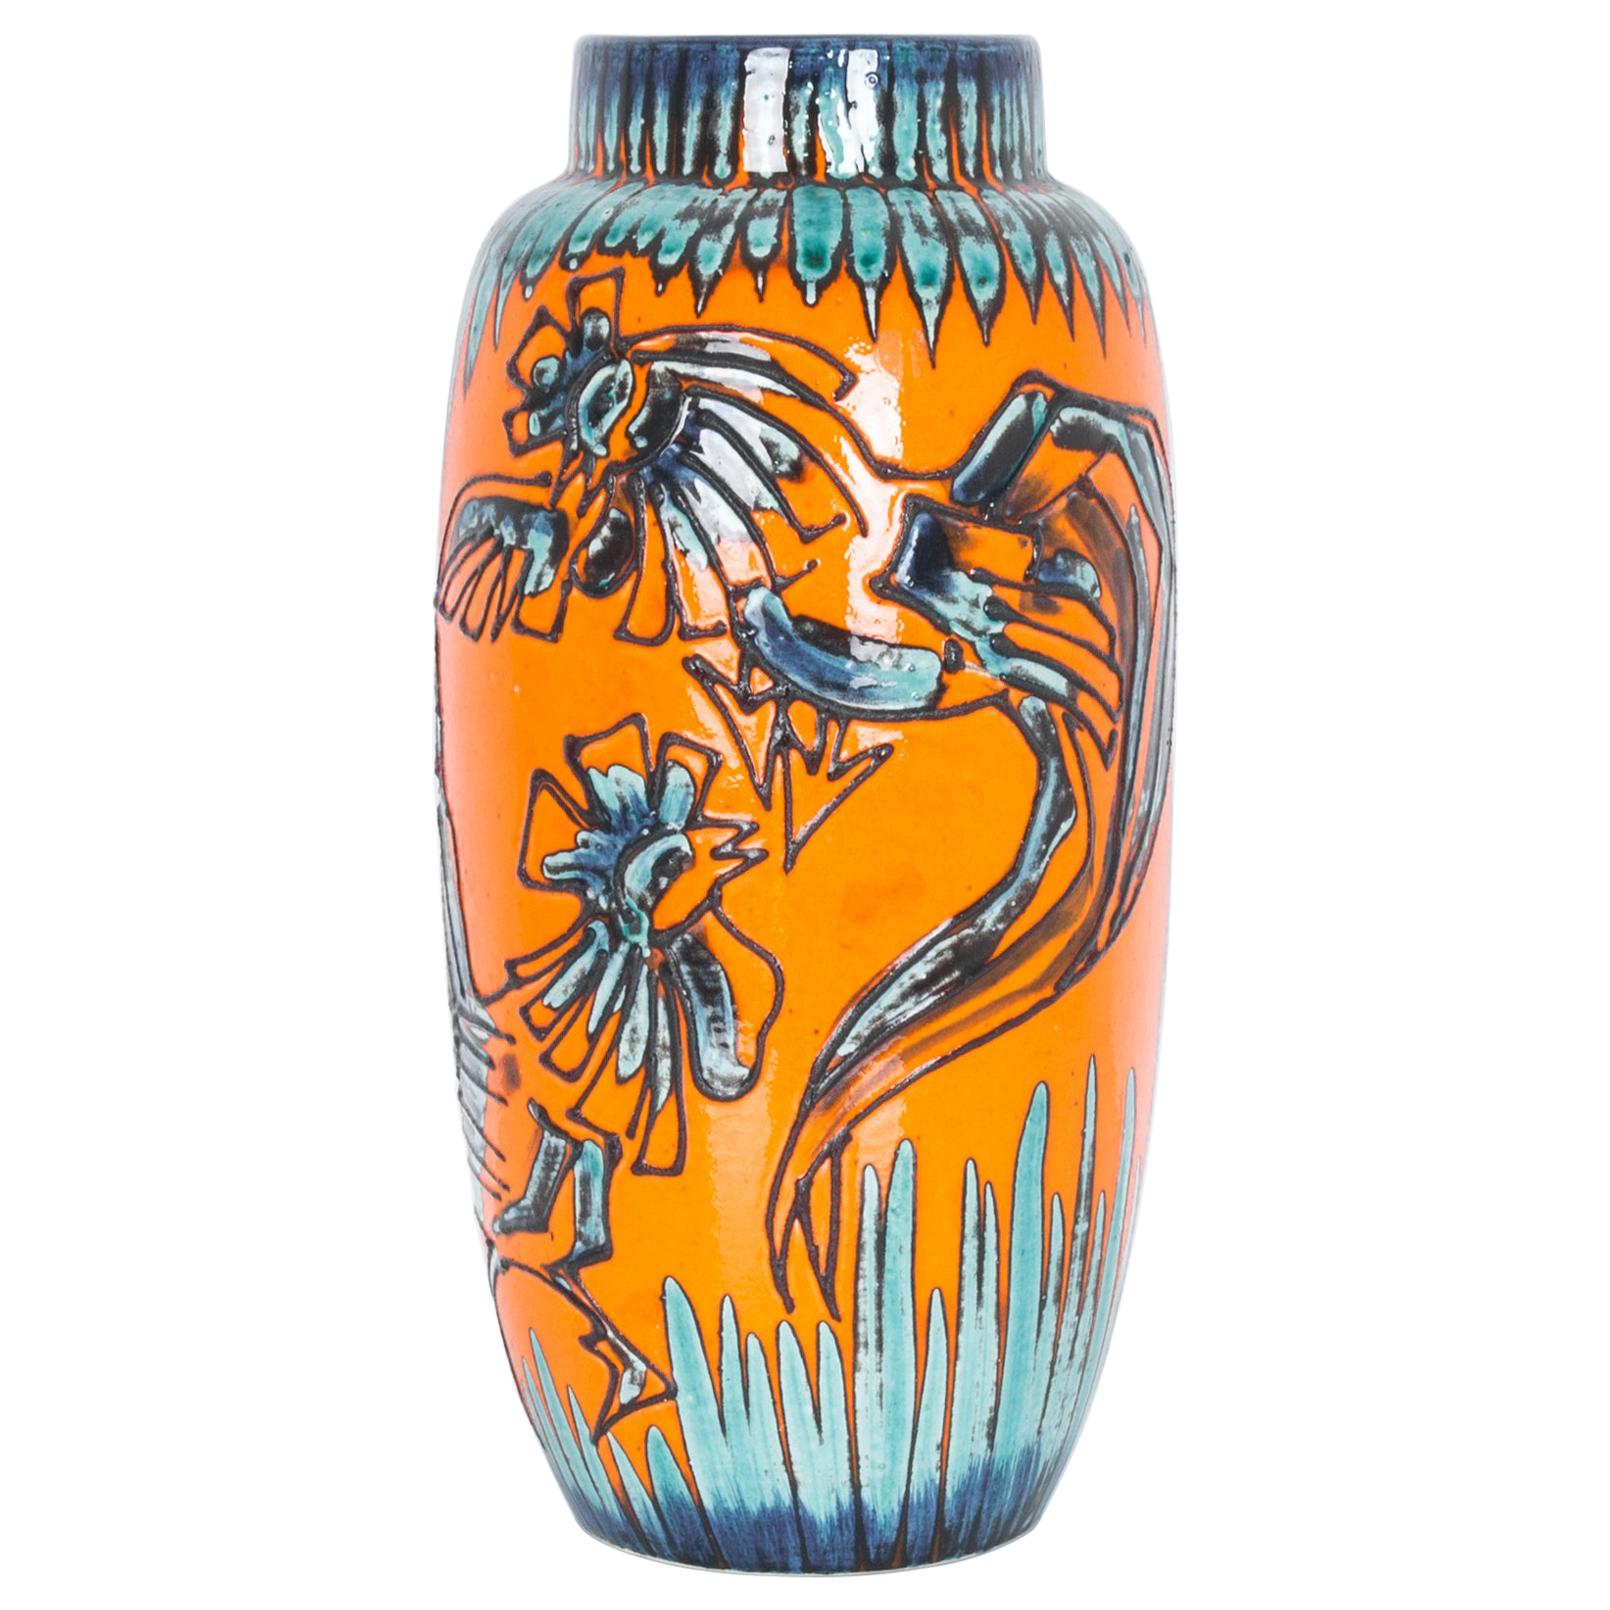 1950s German Ceramic Vase